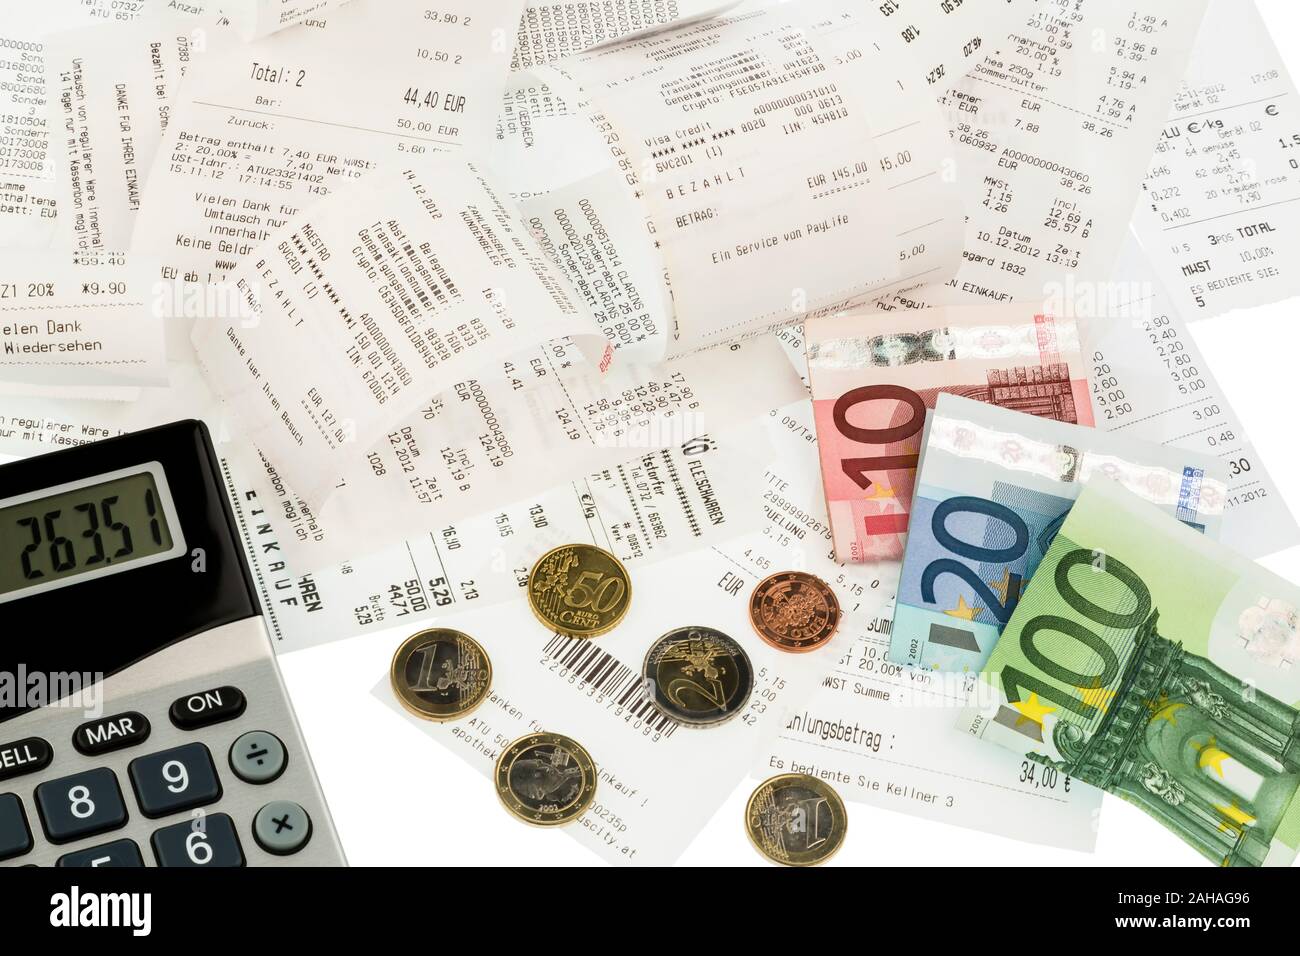 Euro-Banknoten und Münzen, Rechnungen, Einkaufsbelege, Ausgabenkontrolle,  Taschenrechner Stock Photo - Alamy